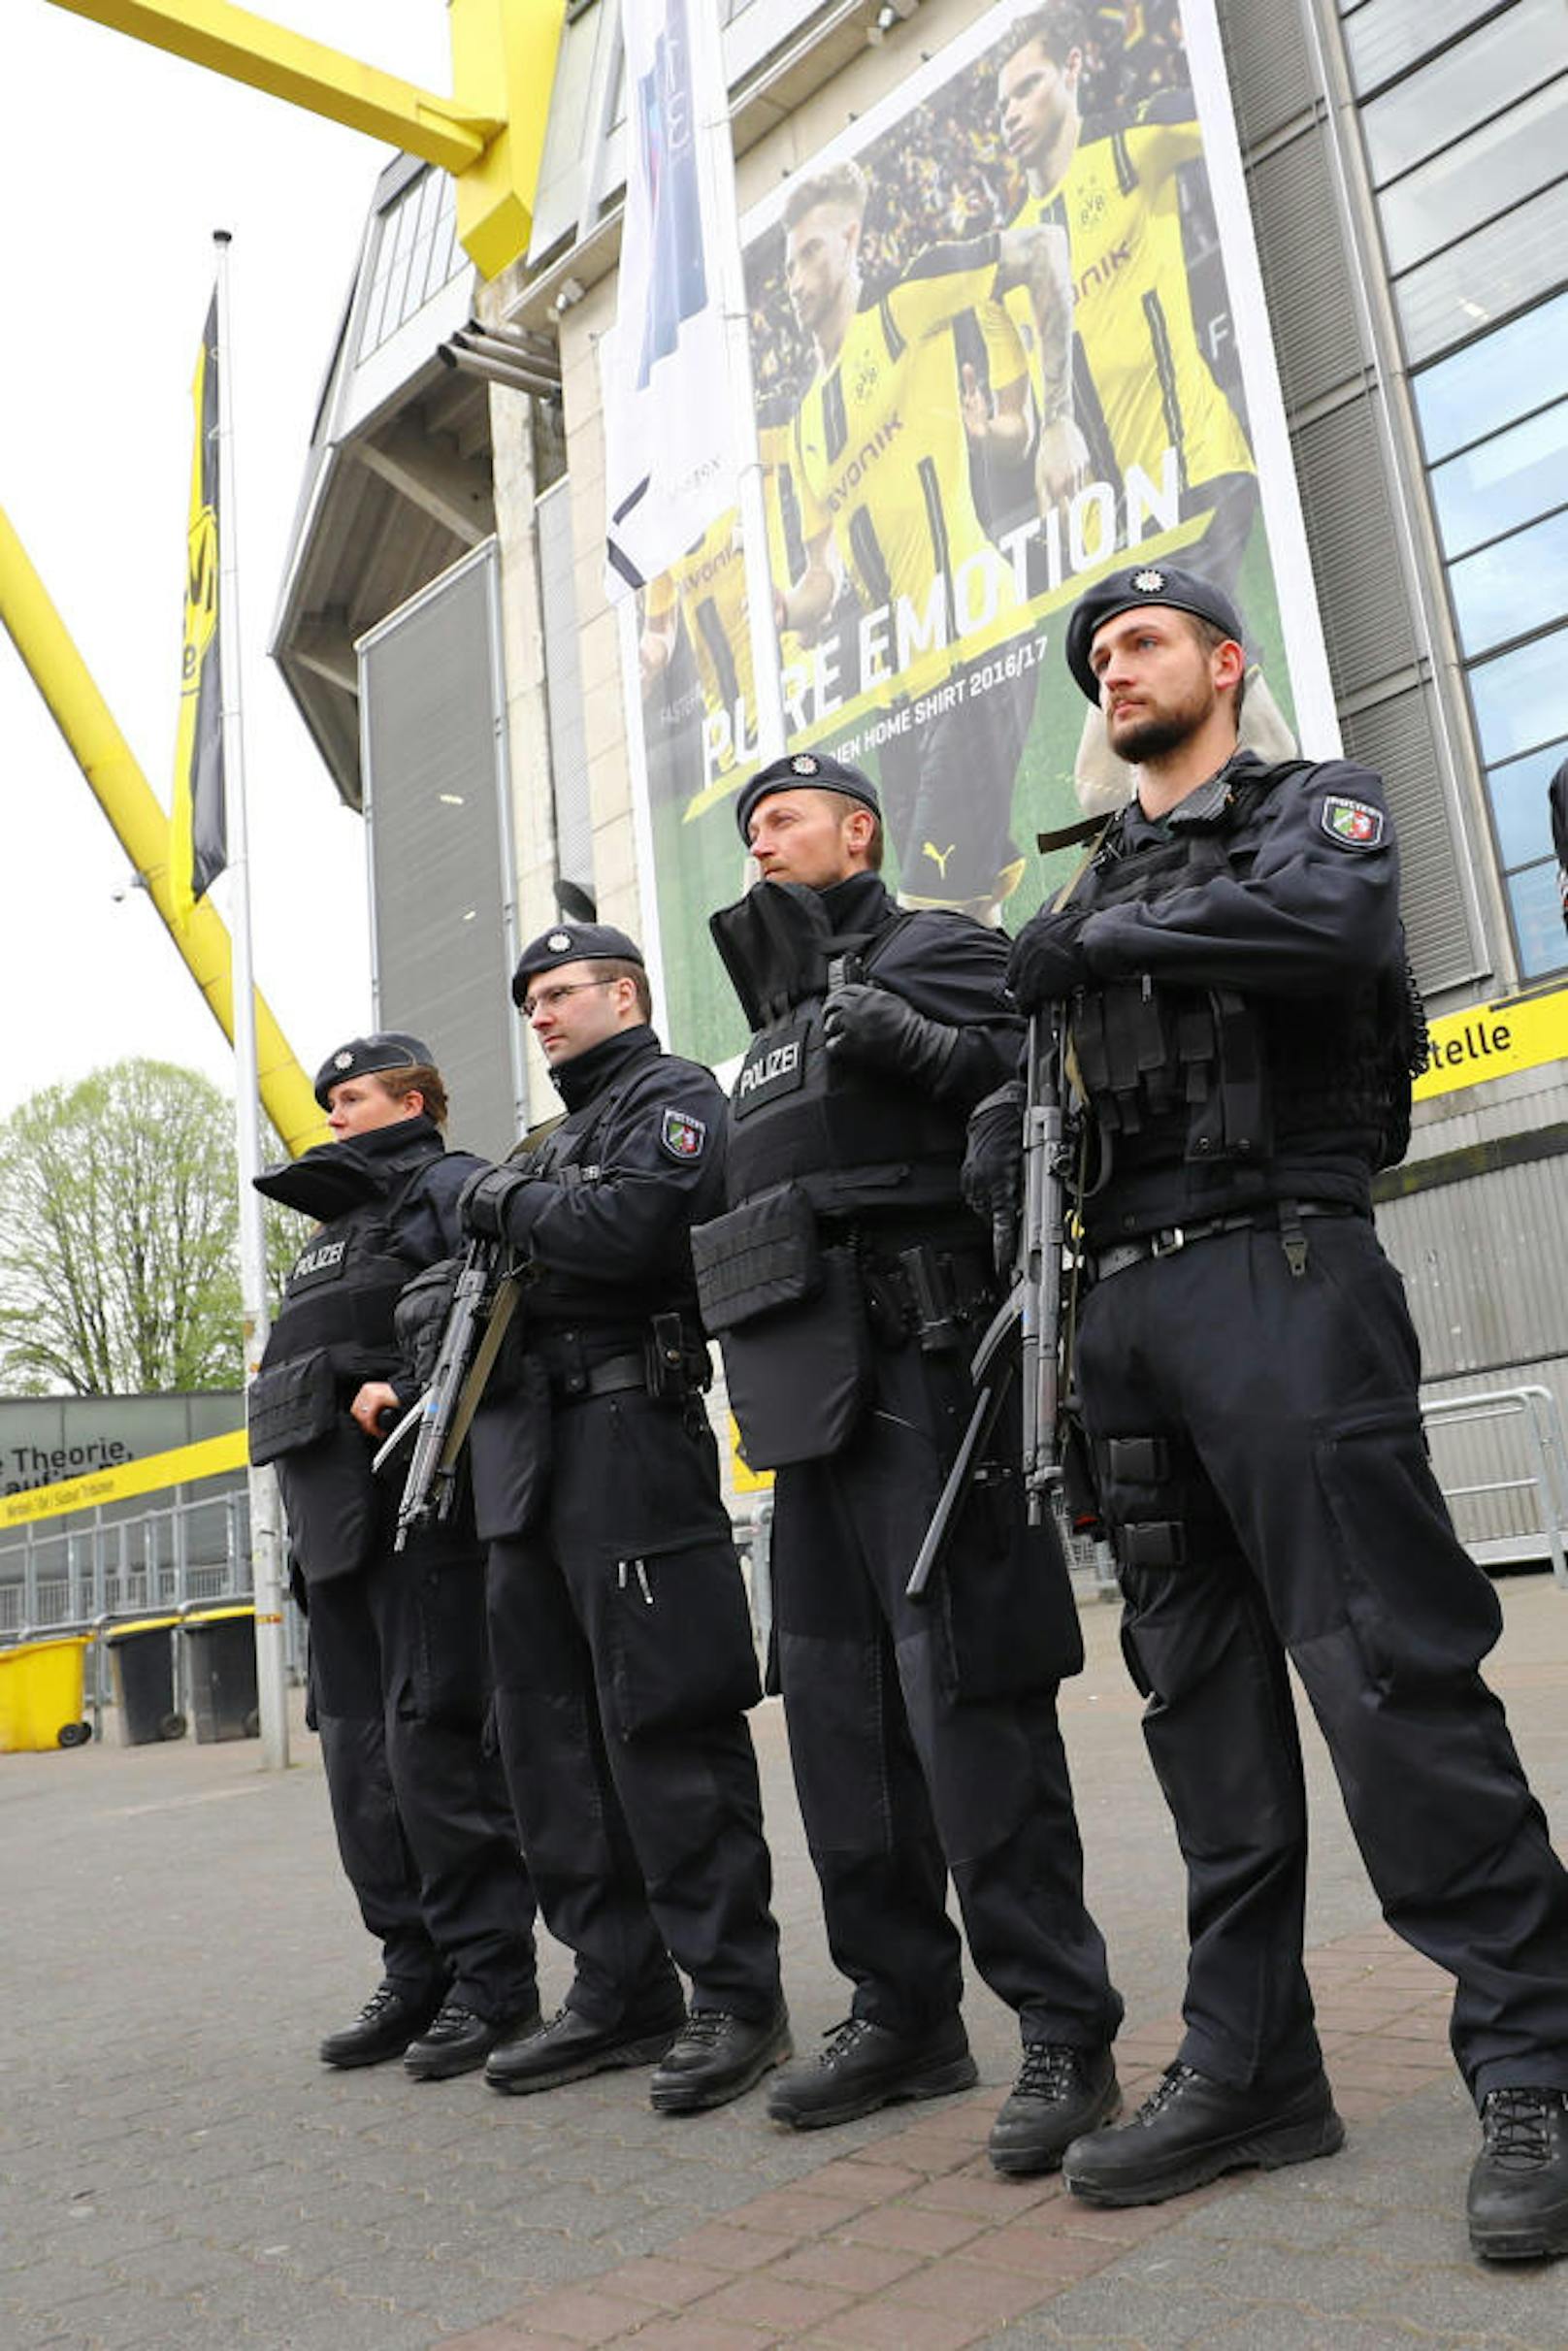 Einsatzkräfte schützen das Stadion